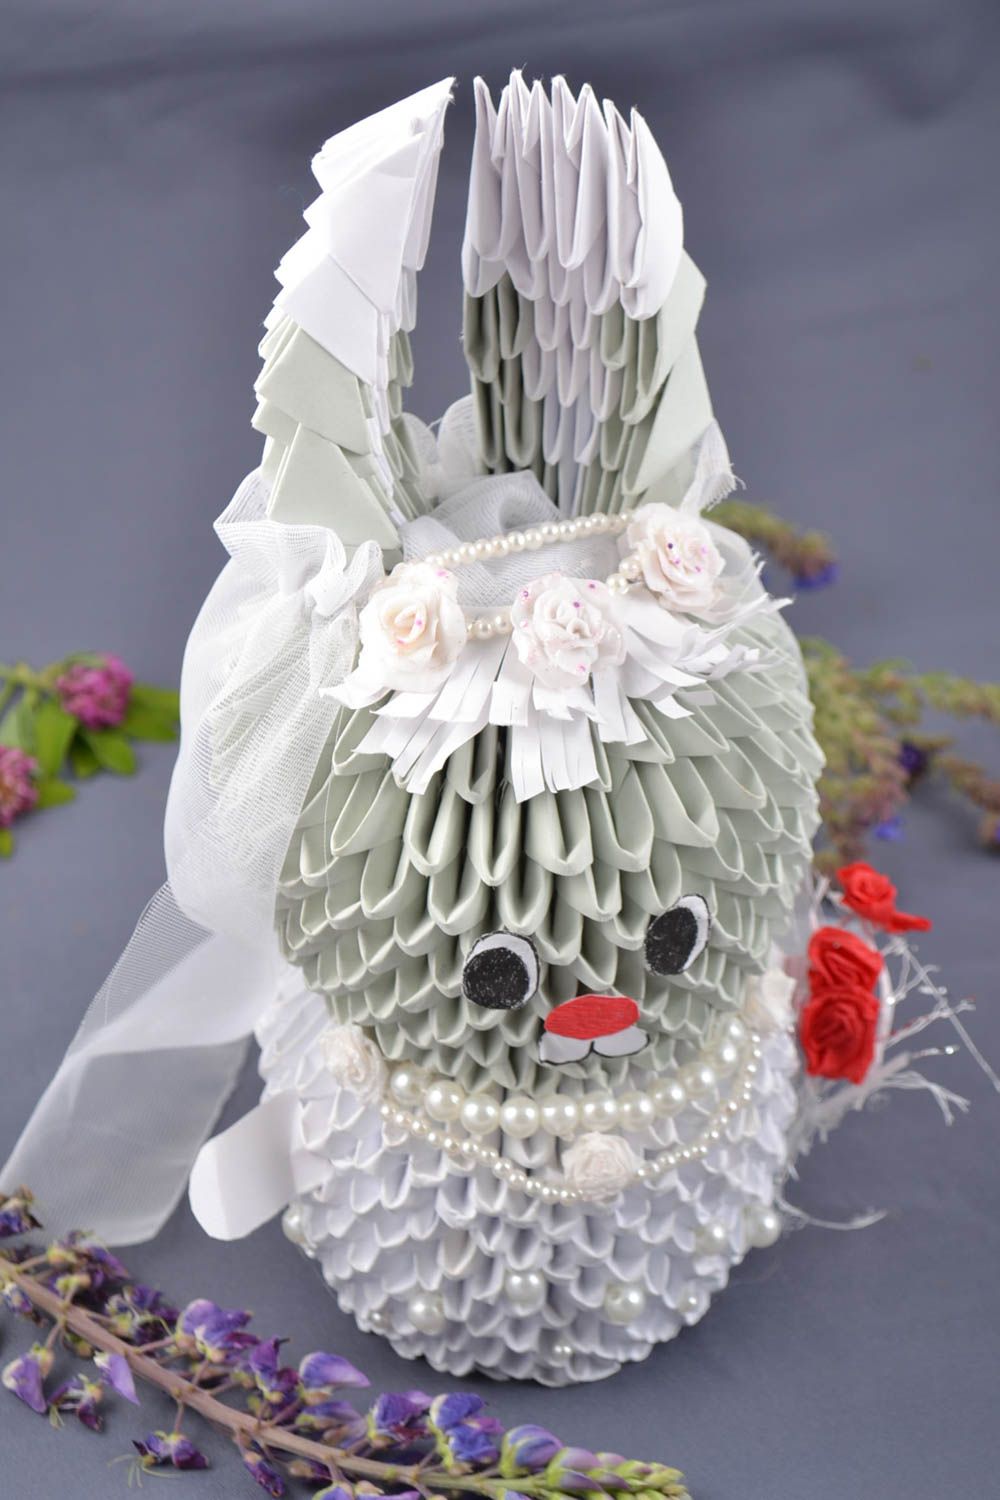 Смешная свадебная фигурка из бумаги в виде зайца в технике оригами ручной работы фото 1